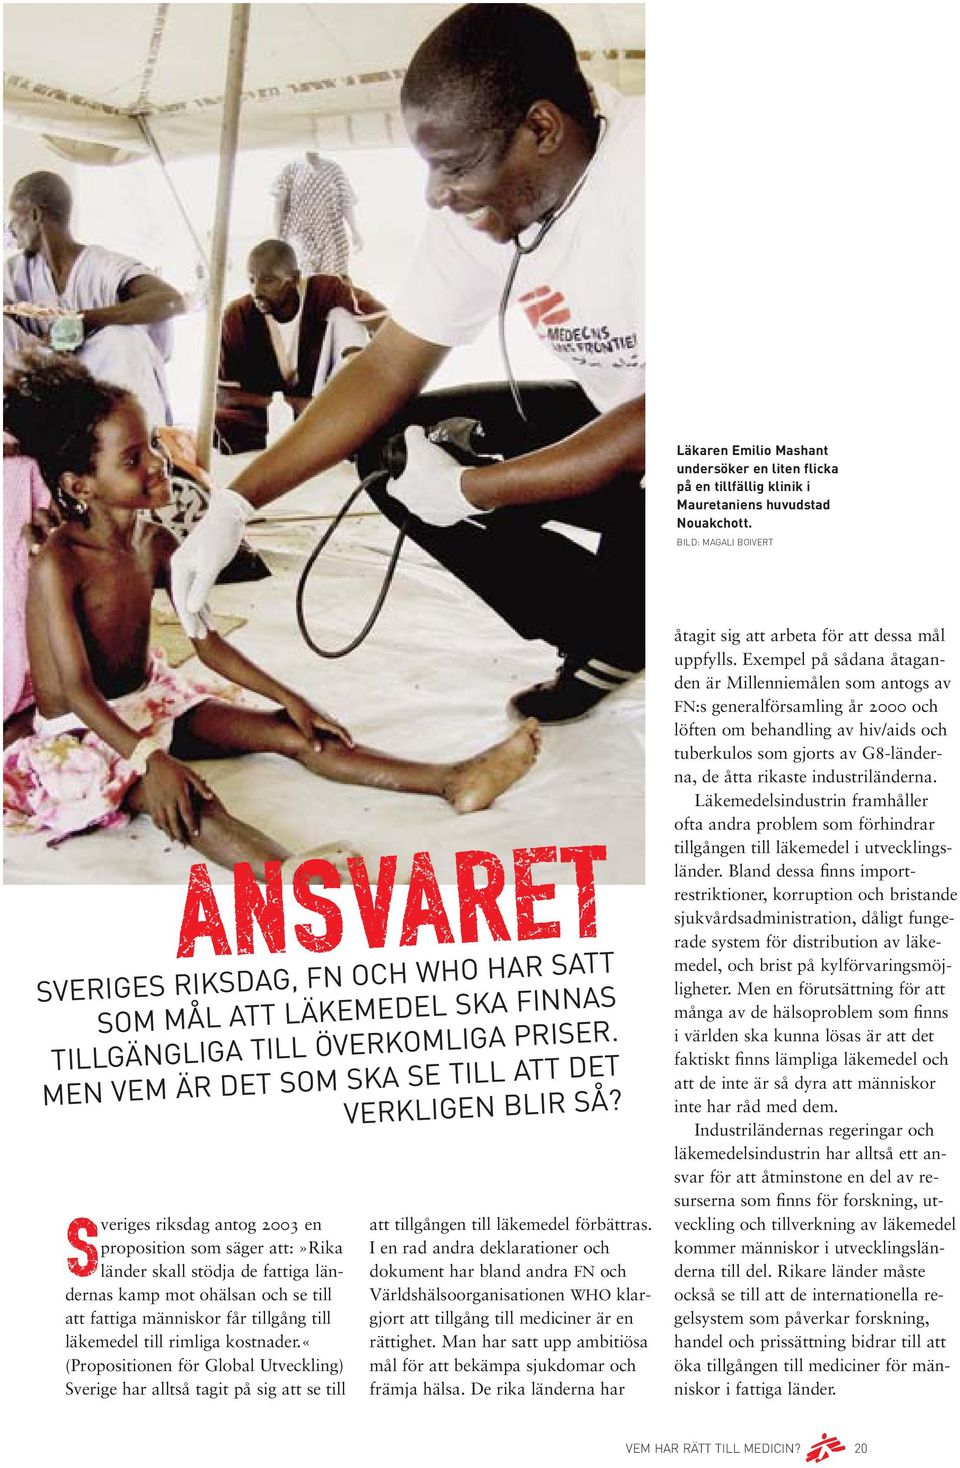 Sveriges riksdag antog 2003 en proposition som säger att:»rika länder skall stödja de fattiga ländernas kamp mot ohälsan och se till att fattiga människor får tillgång till läkemedel till rimliga